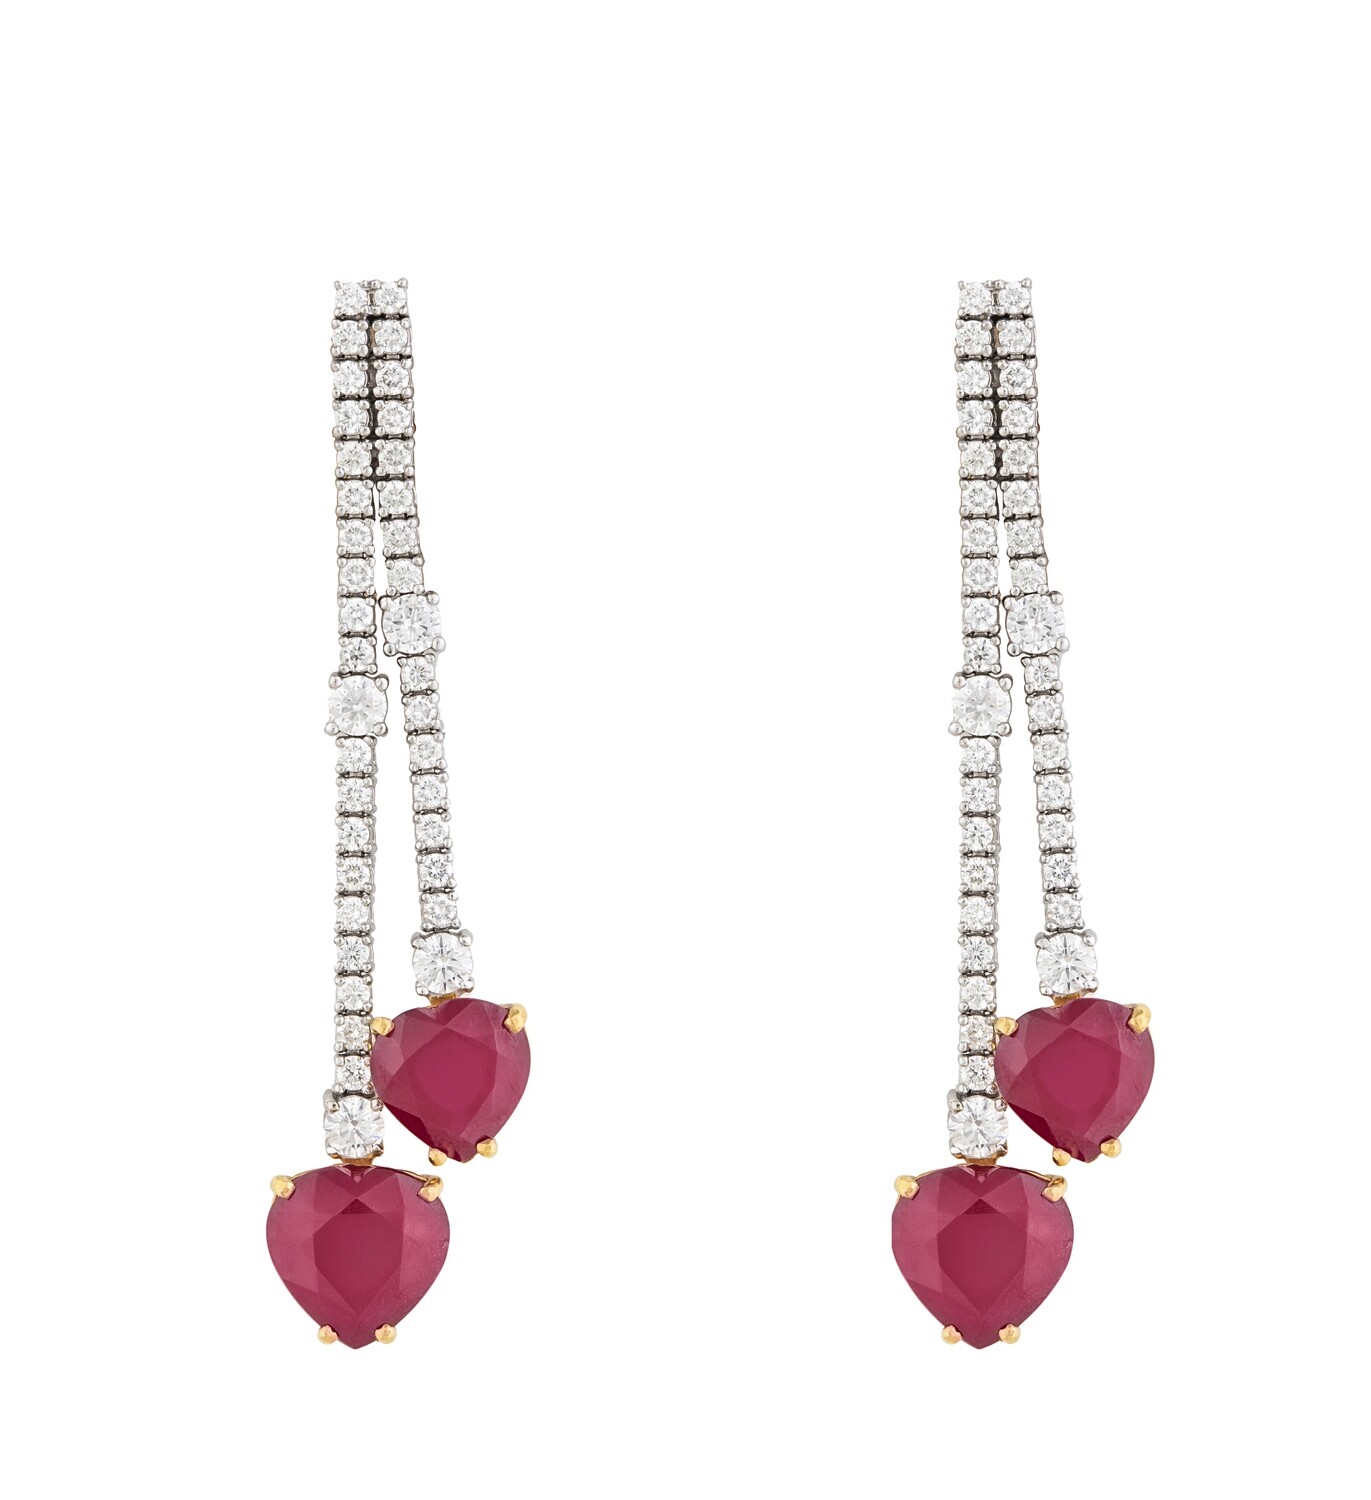 Eternal Diamond Hearts Earrings with Ruby